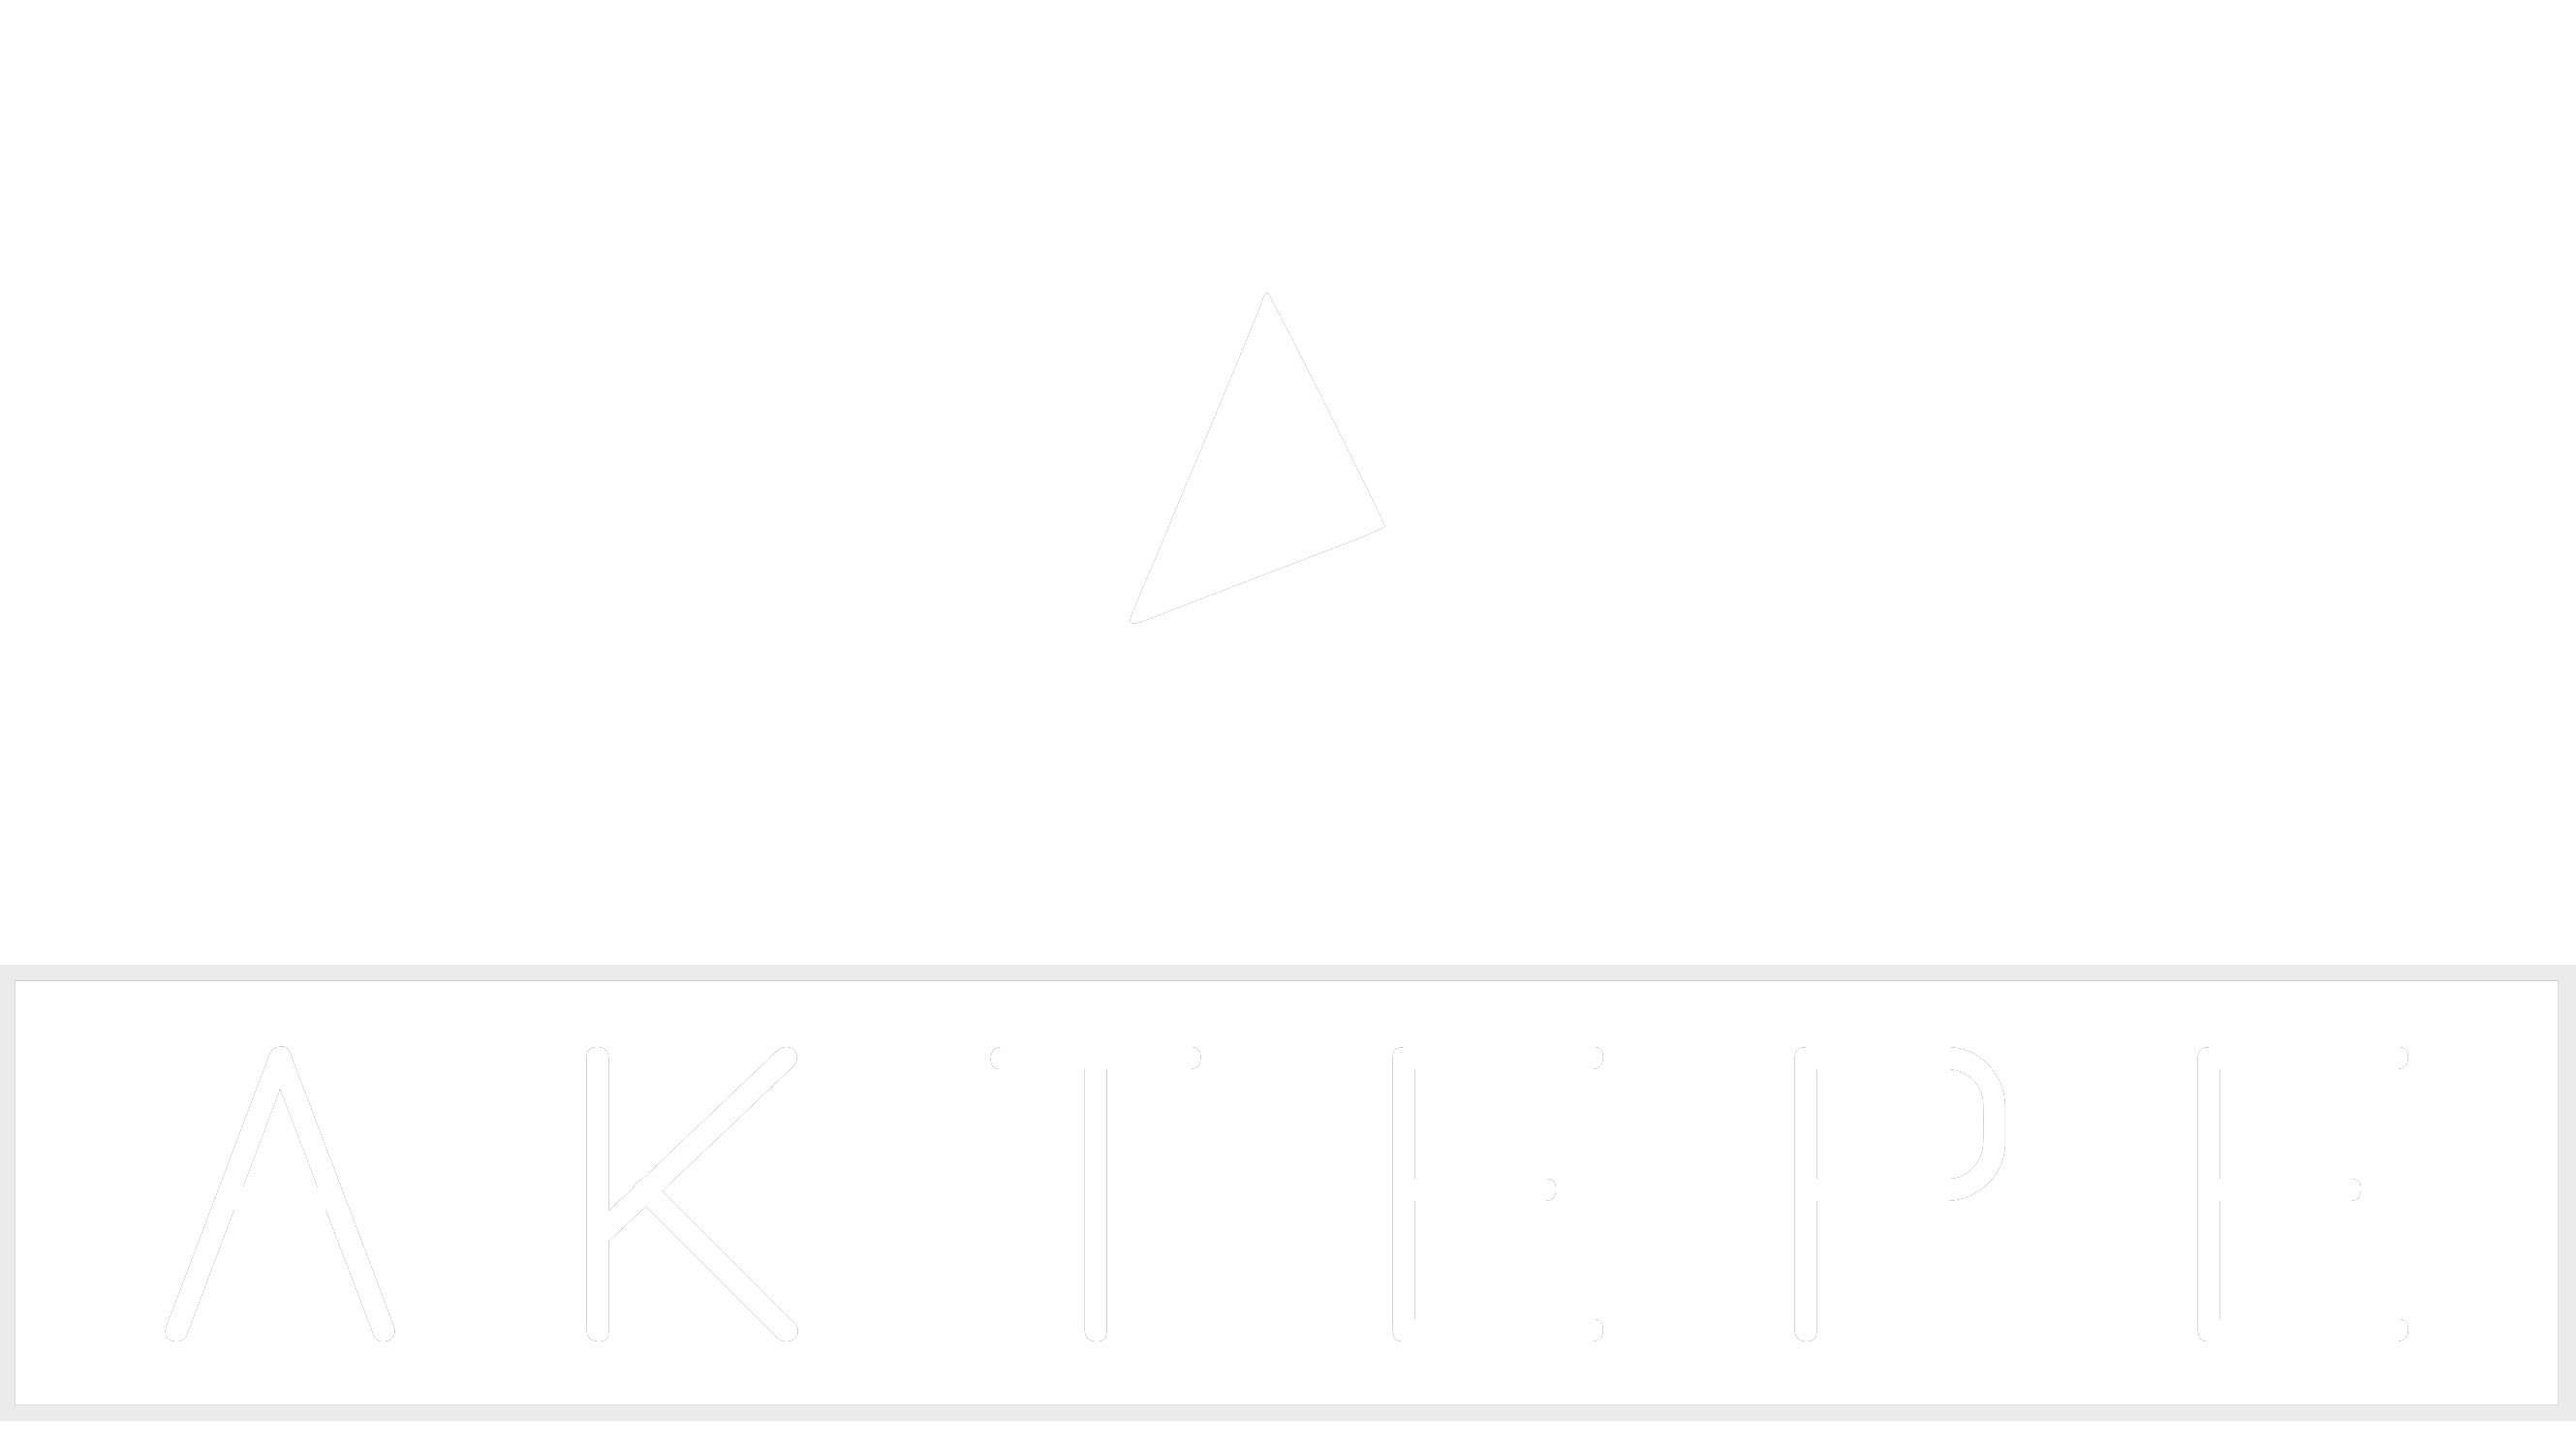 17,5 Cm - Aktepe Shop - Oto Müzik Görüntü Navigasyon Sistemleri ve Teyp Çerçevesi Satış Merkezi